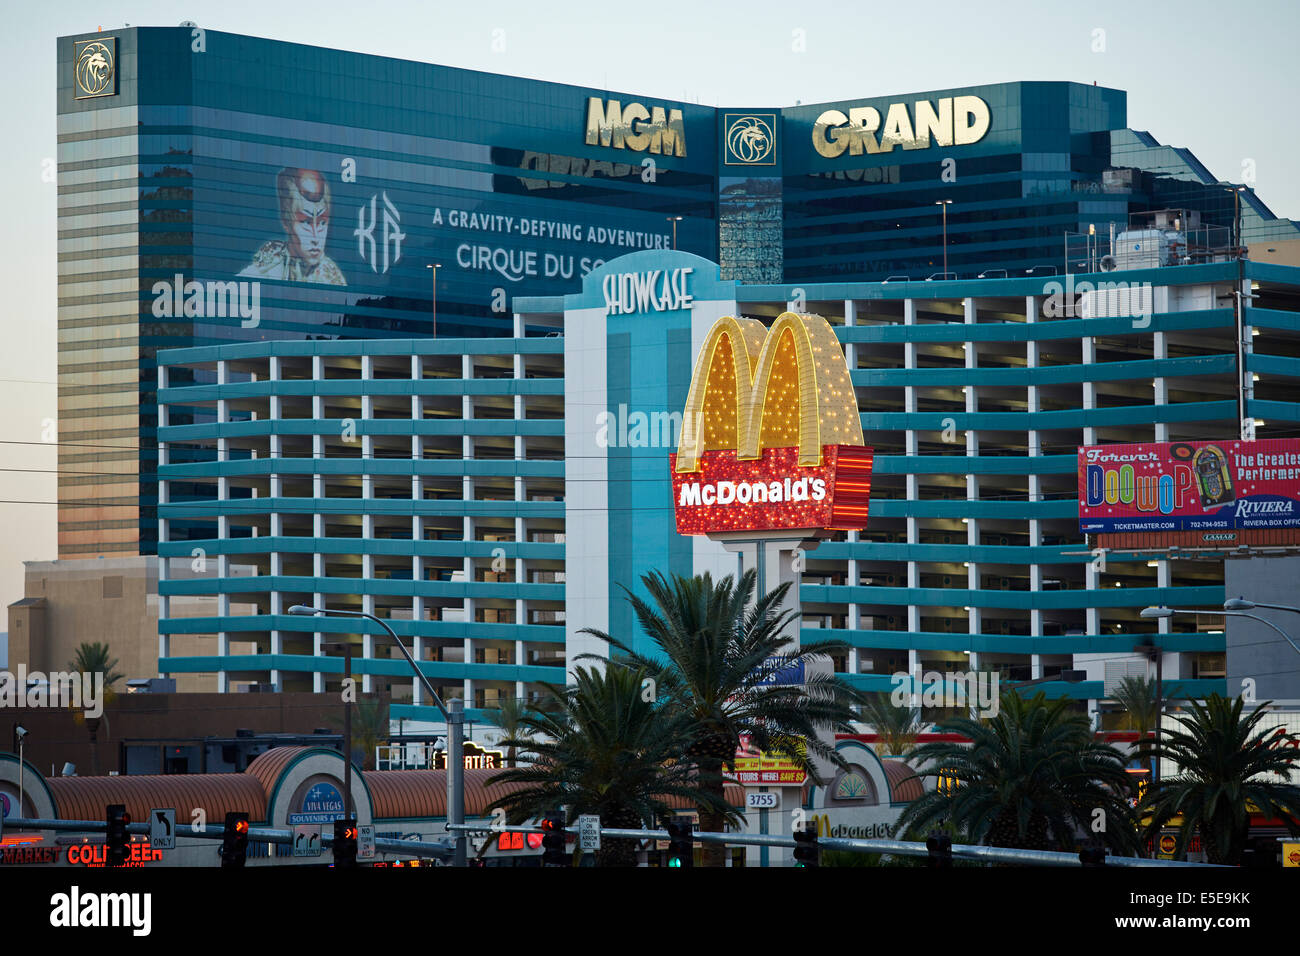 Das MGM Grand Las Vegas ist ein Hotelcasino am Las Vegas Strip in Paradies, Nevada. Umrahmt von einem McDonalds goldenen Bogen Stockfoto